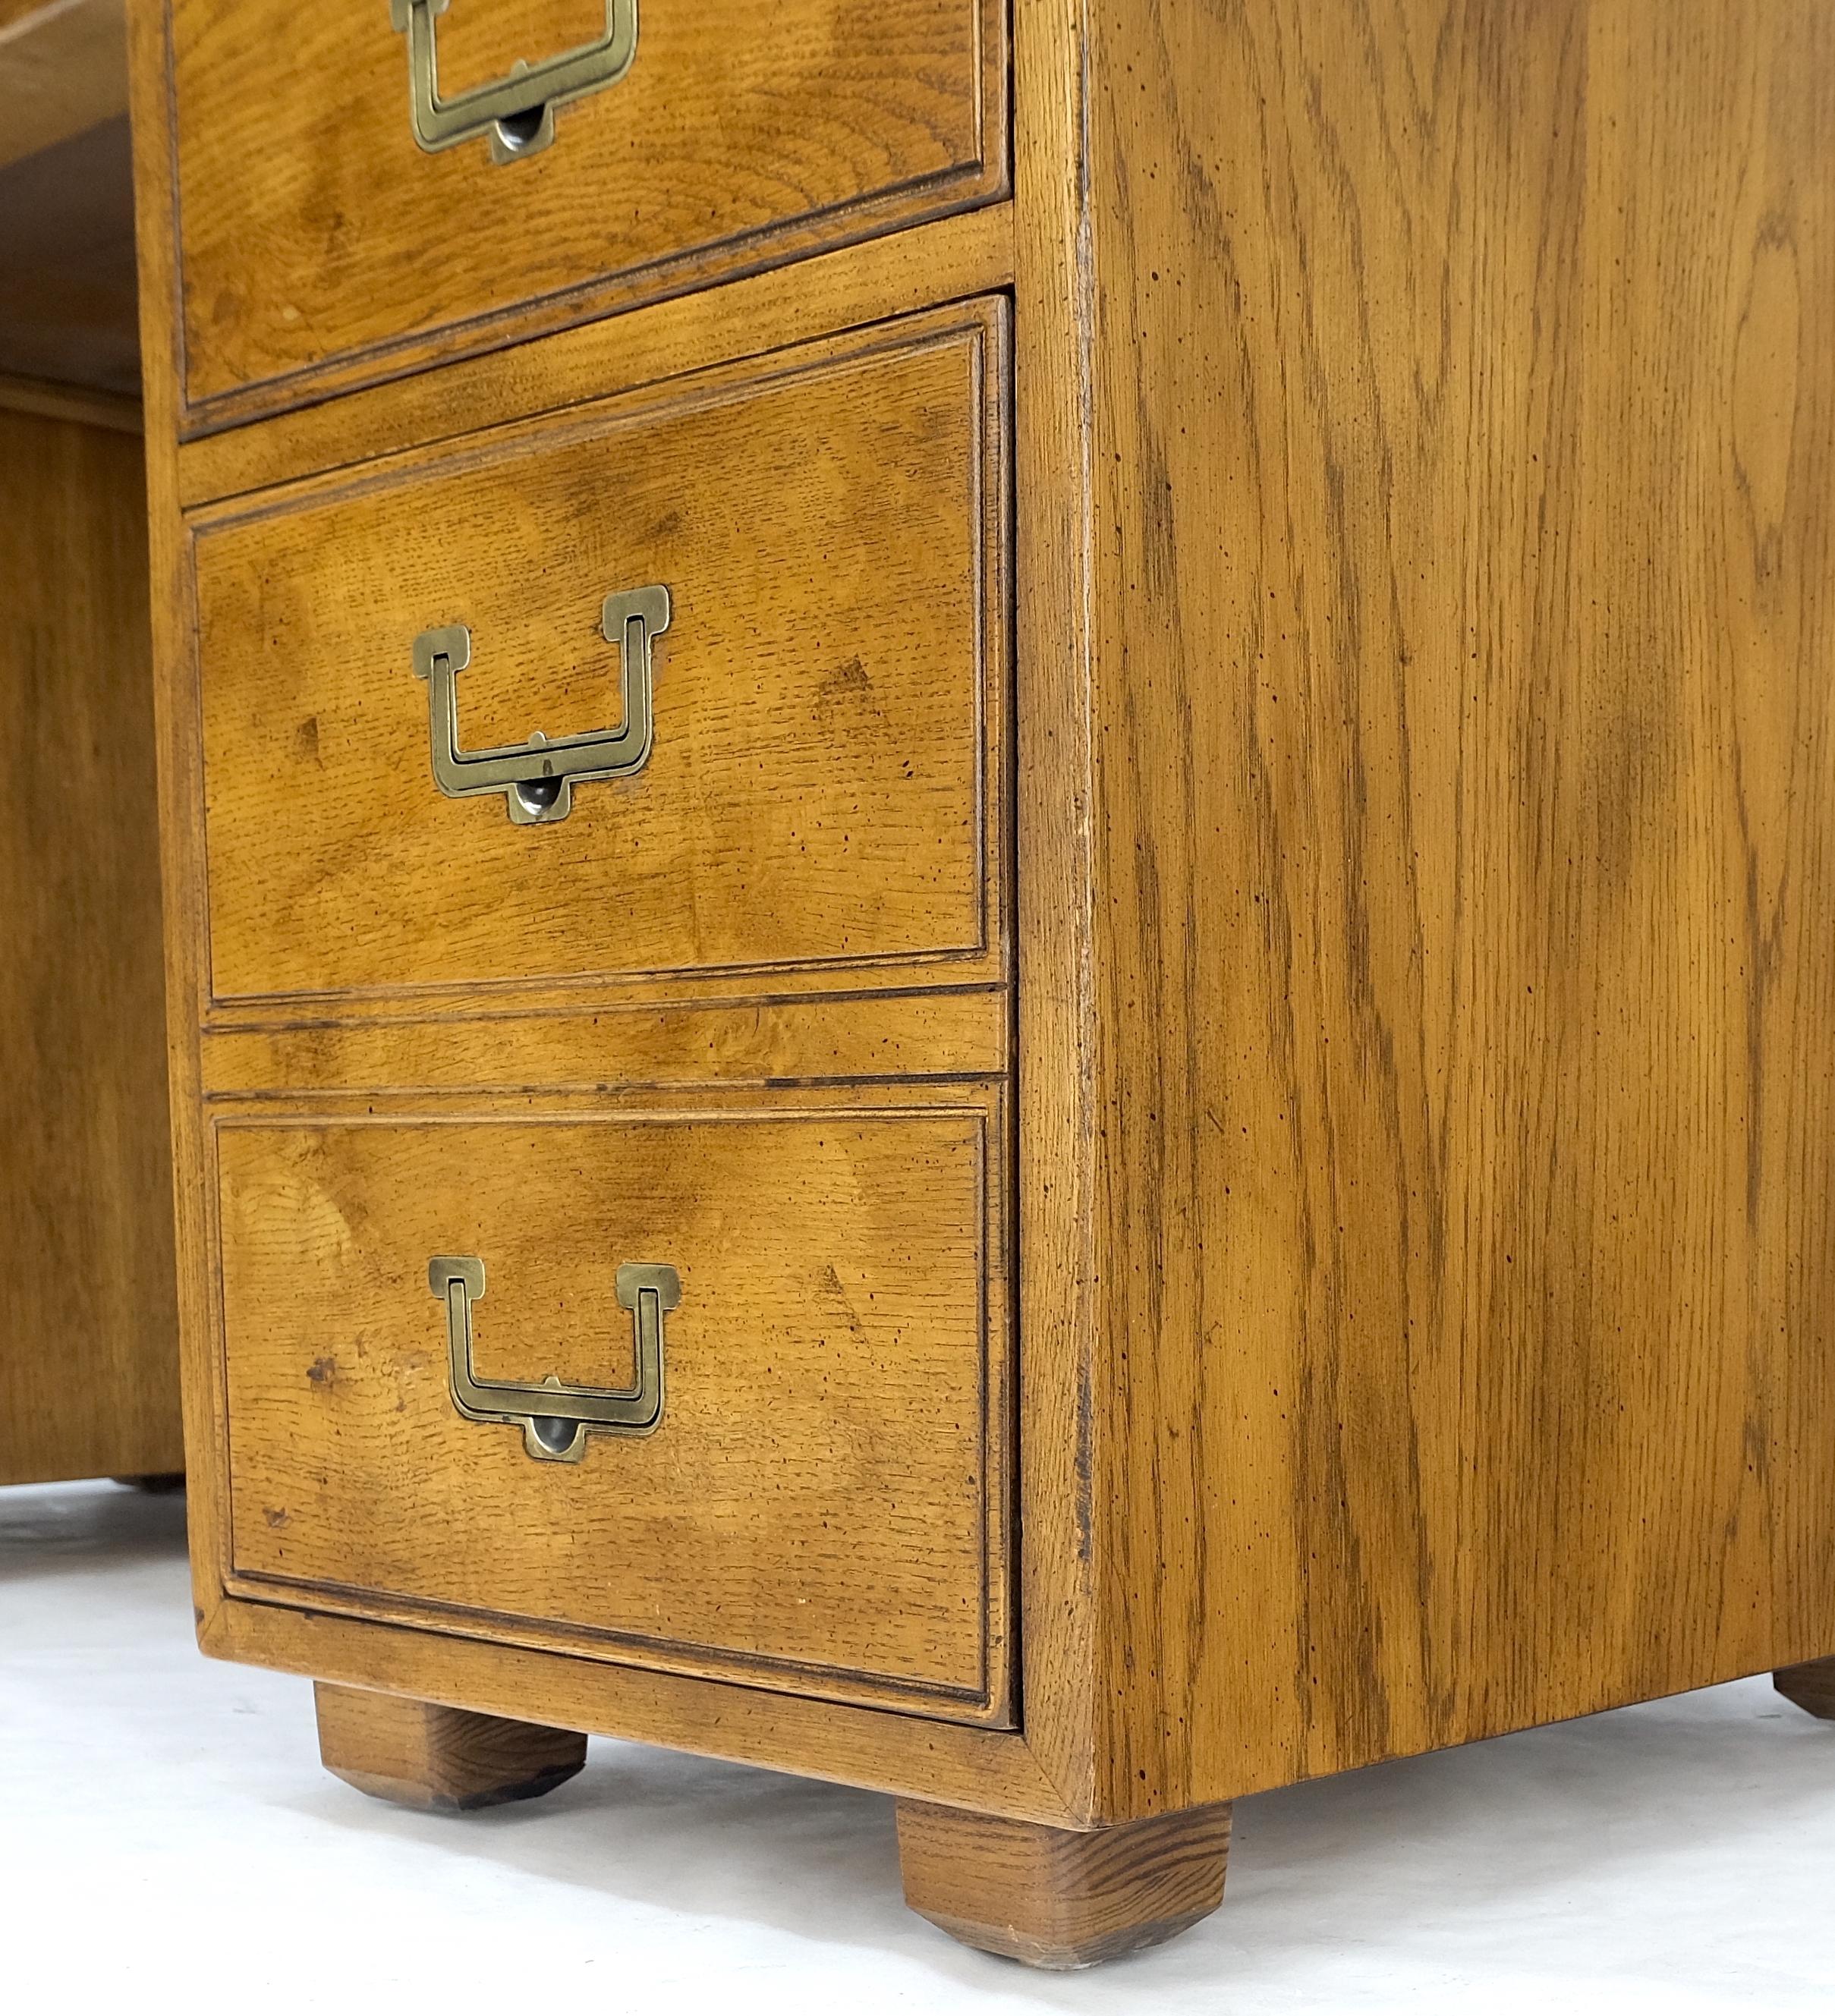 Oak Henredon Campaign Style Mid-Century Modern Desk W/ Brass Drop Pulls Mint!